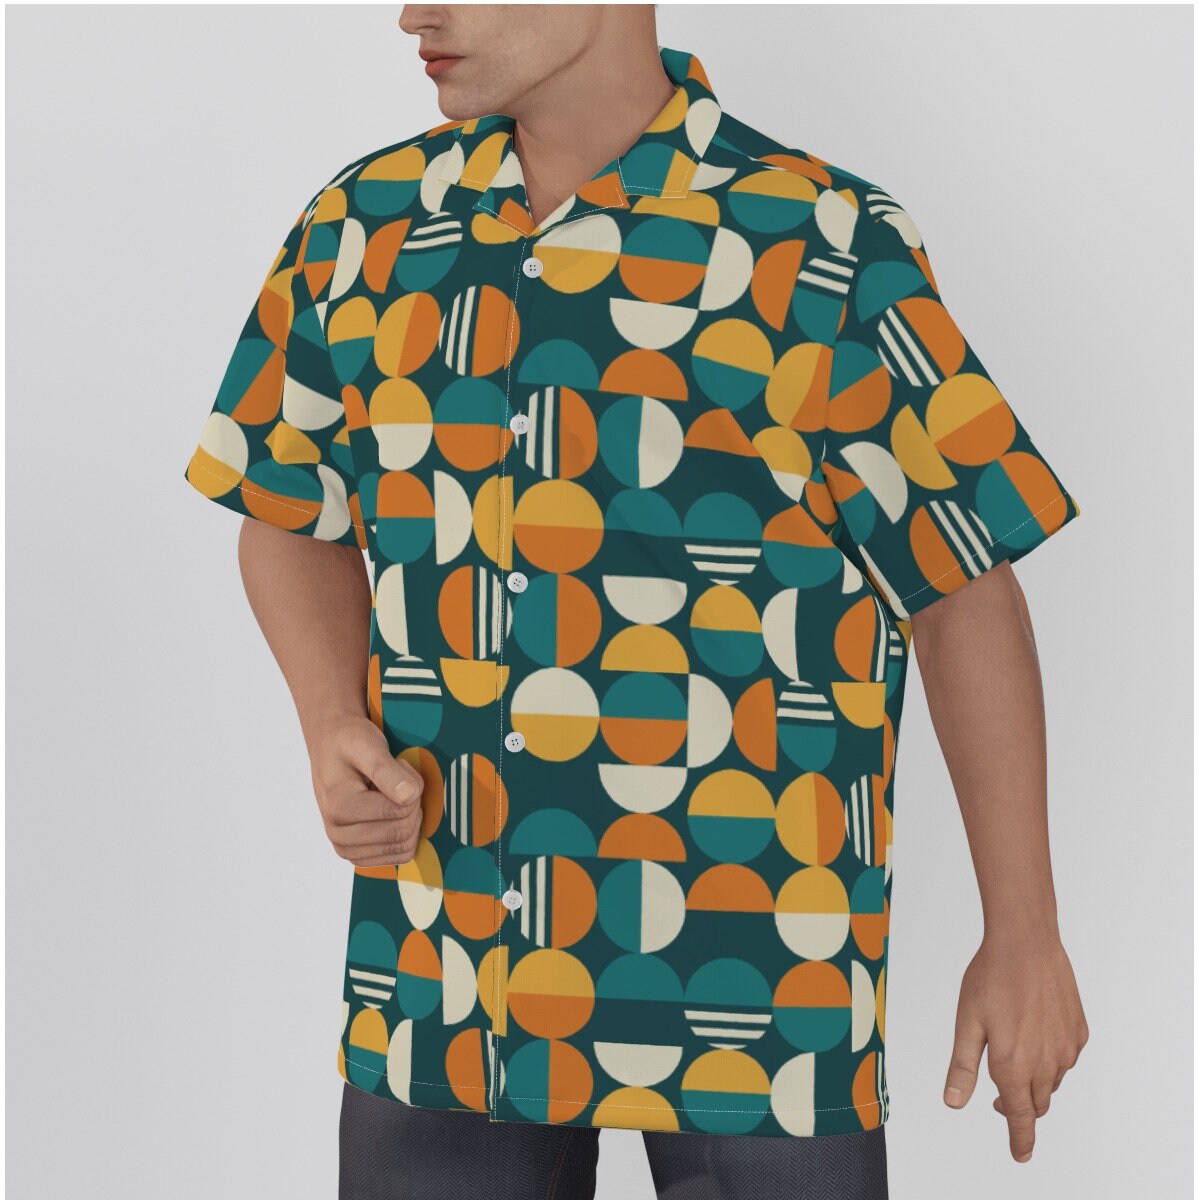 Retro-Hemd für Herren, Retro-Oberteil, Mod-Hemd, geometrisches Hemd, orangefarbenes Teal-Hemd, Vintage-Stil-Oberteil, 60er-Jahre-inspiriertes Hawaii-Hemd, Hemd